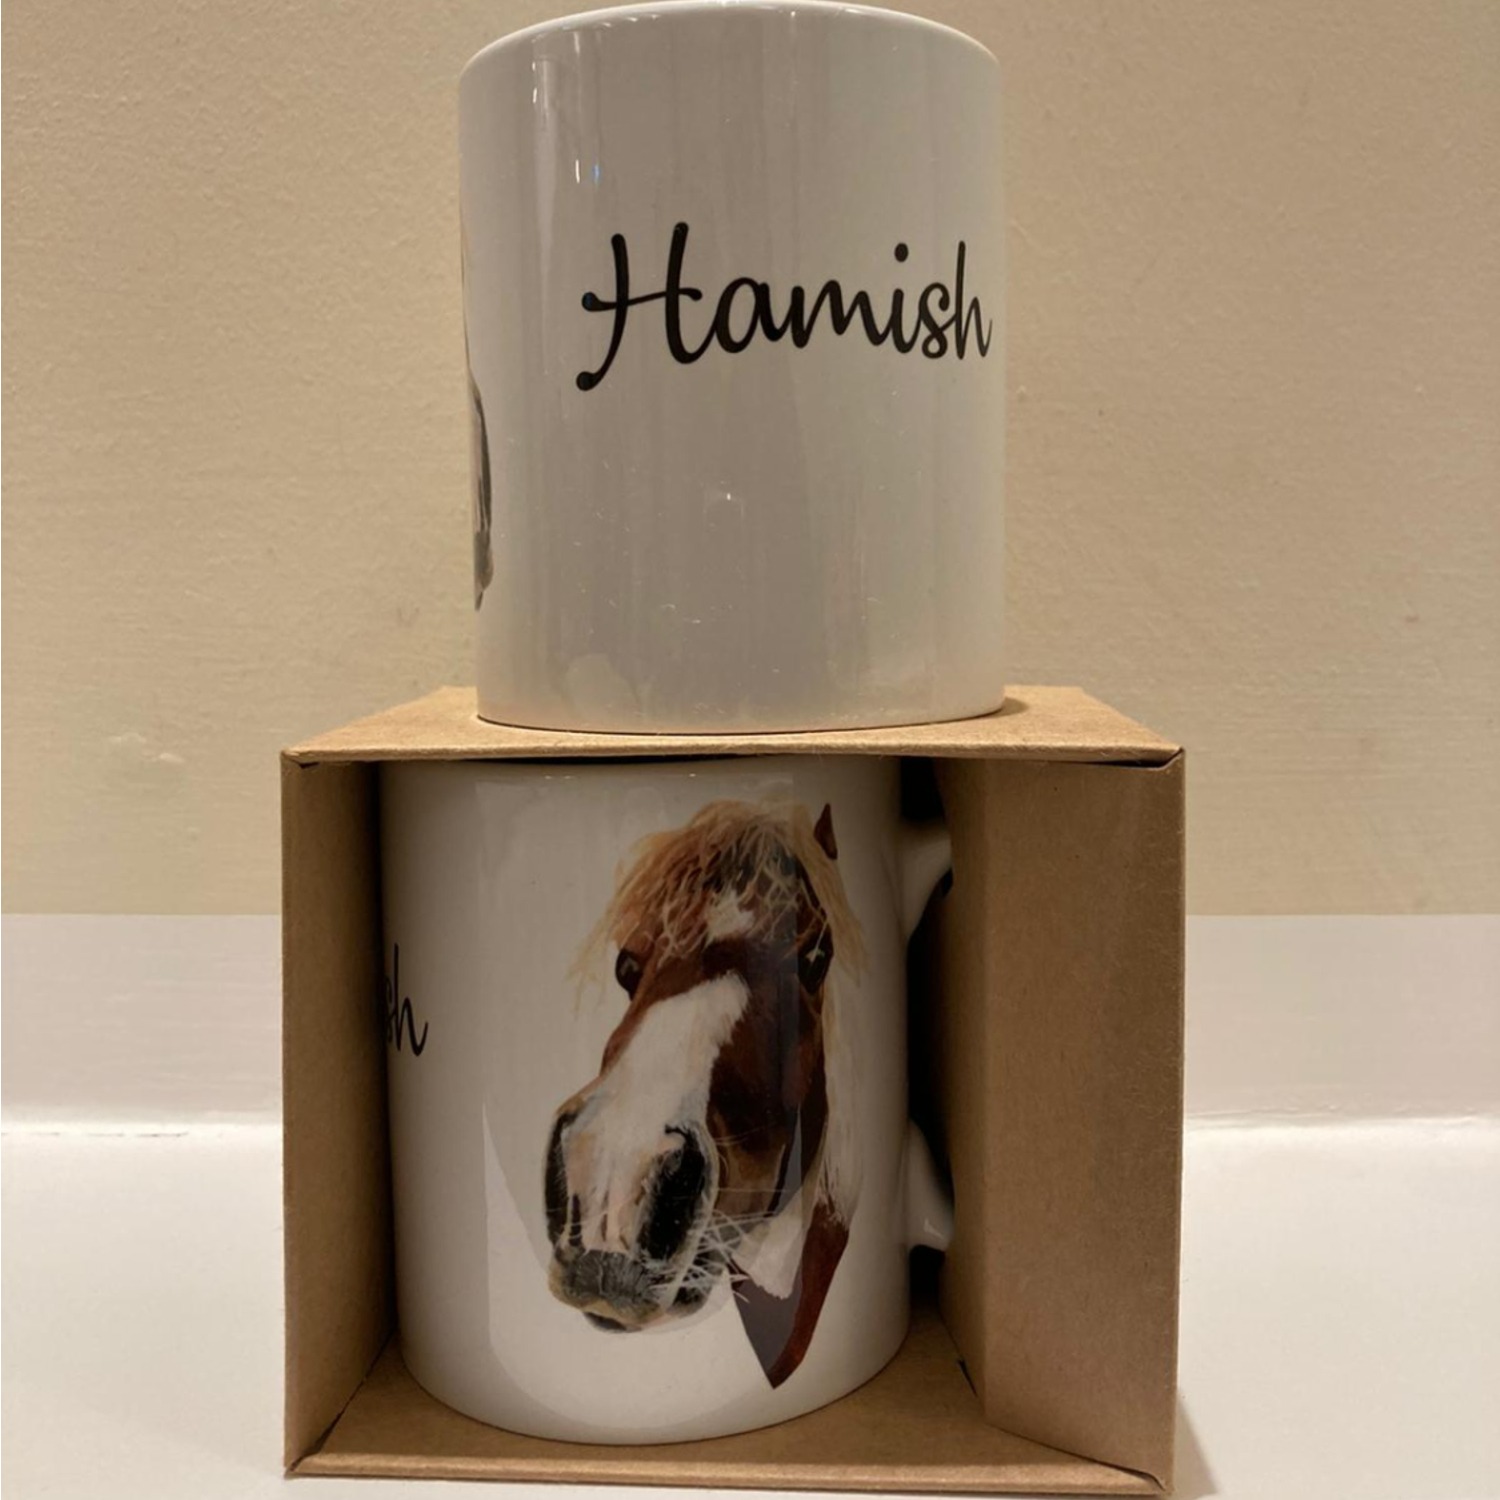 A beautiful china horse mug featuring Hamish